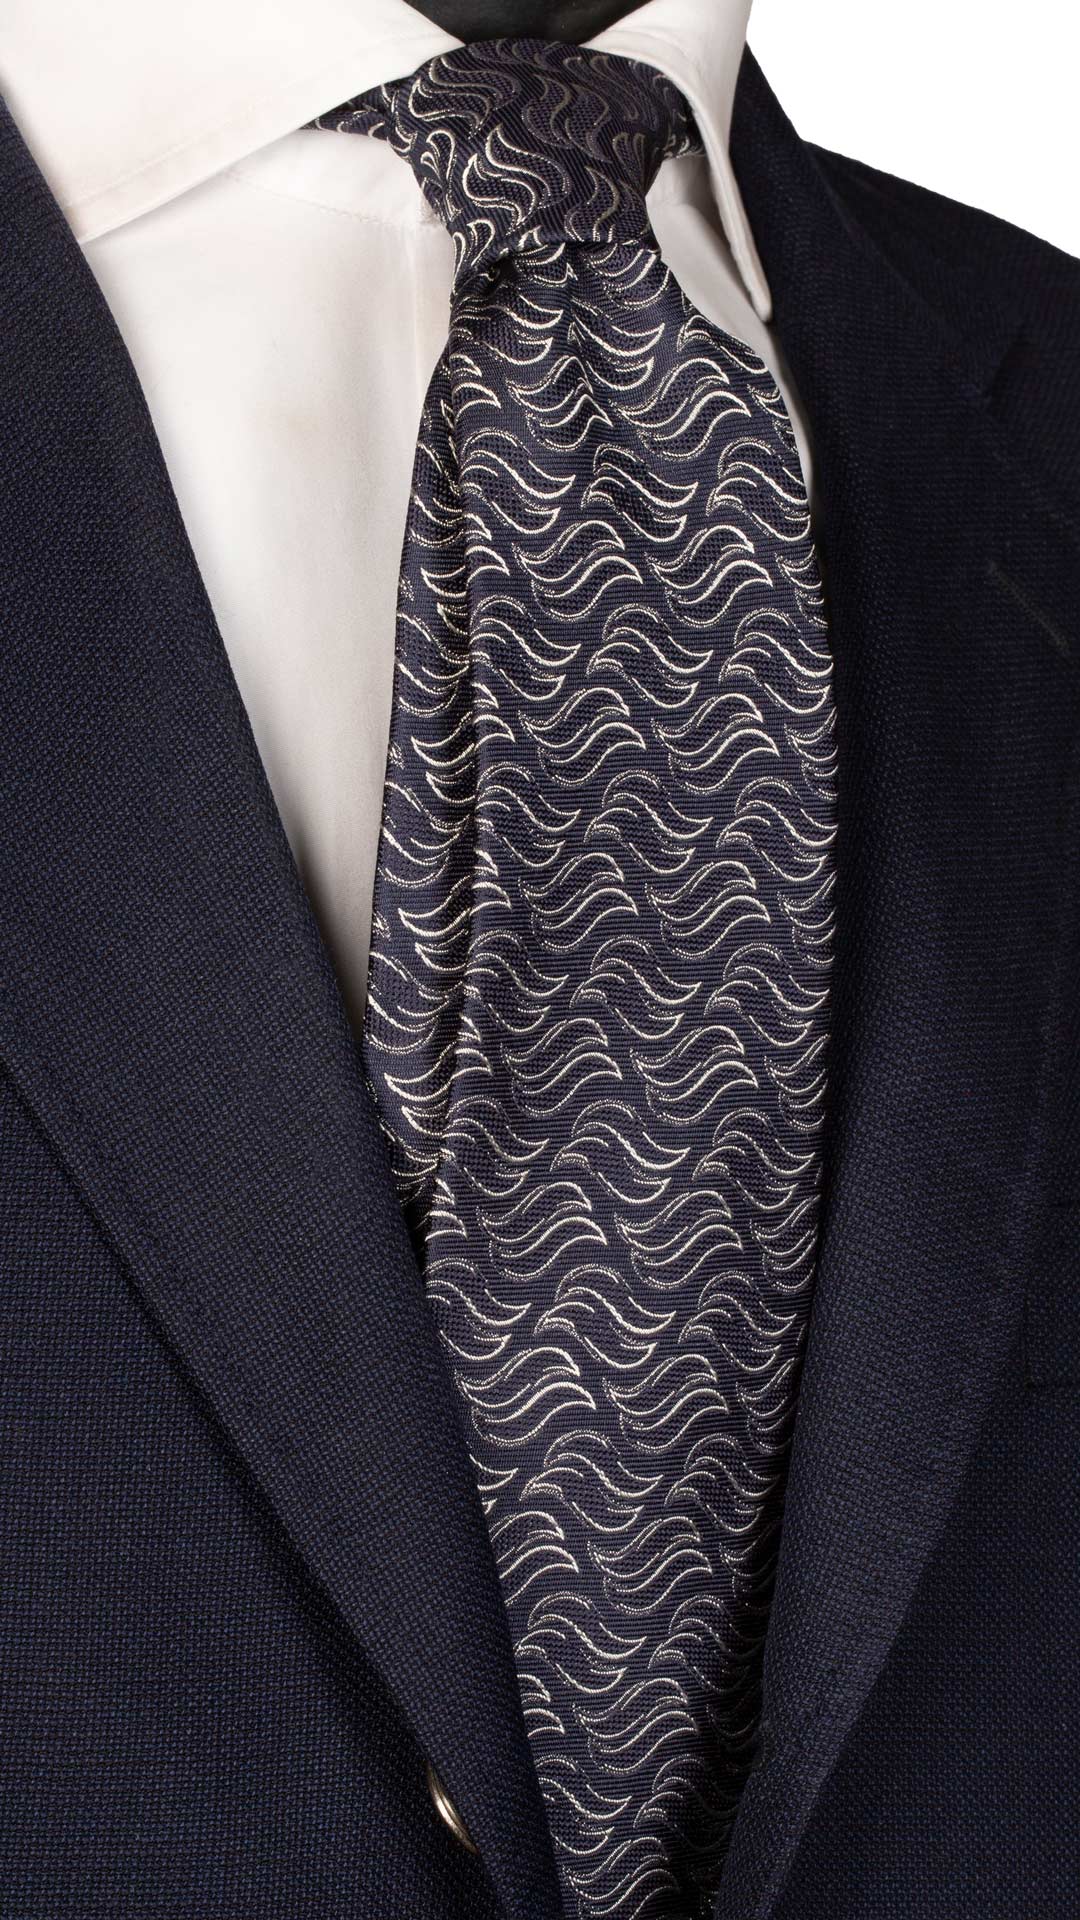 Cravatta da Cerimonia di Seta Blu a Fantasia Grigio Chiaro Made in Italy Graffeo Cravatte